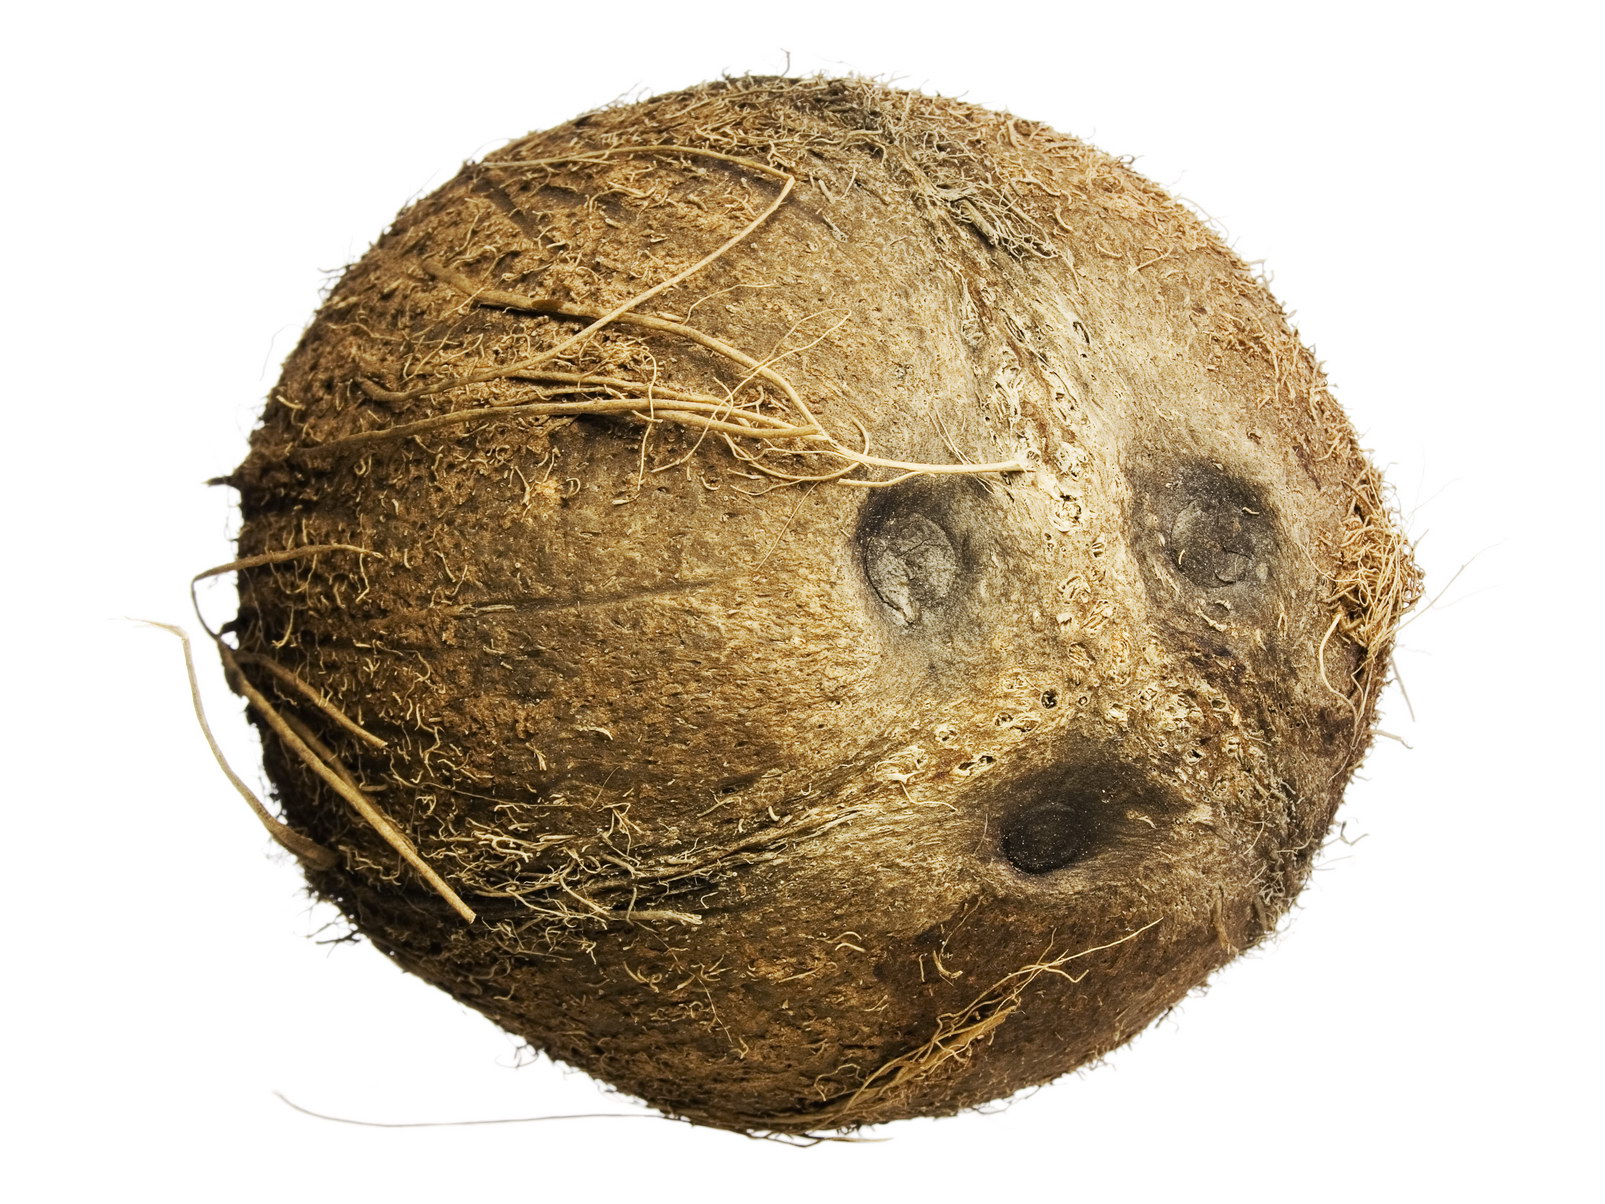 Coconut photo